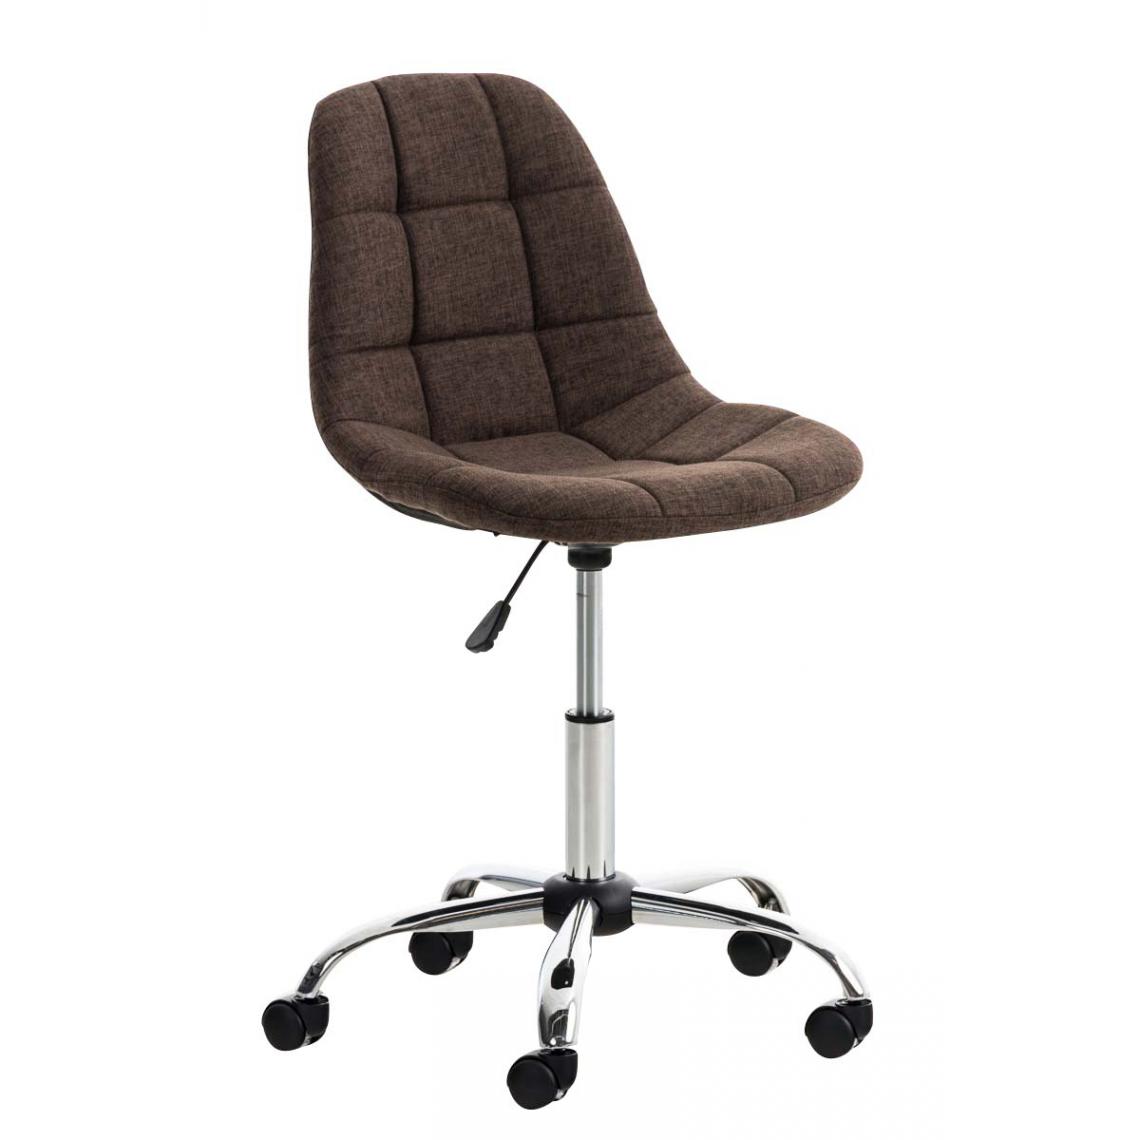 Icaverne - Joli Chaise de bureau famille Sanaa Stoff couleur marron - Chaises